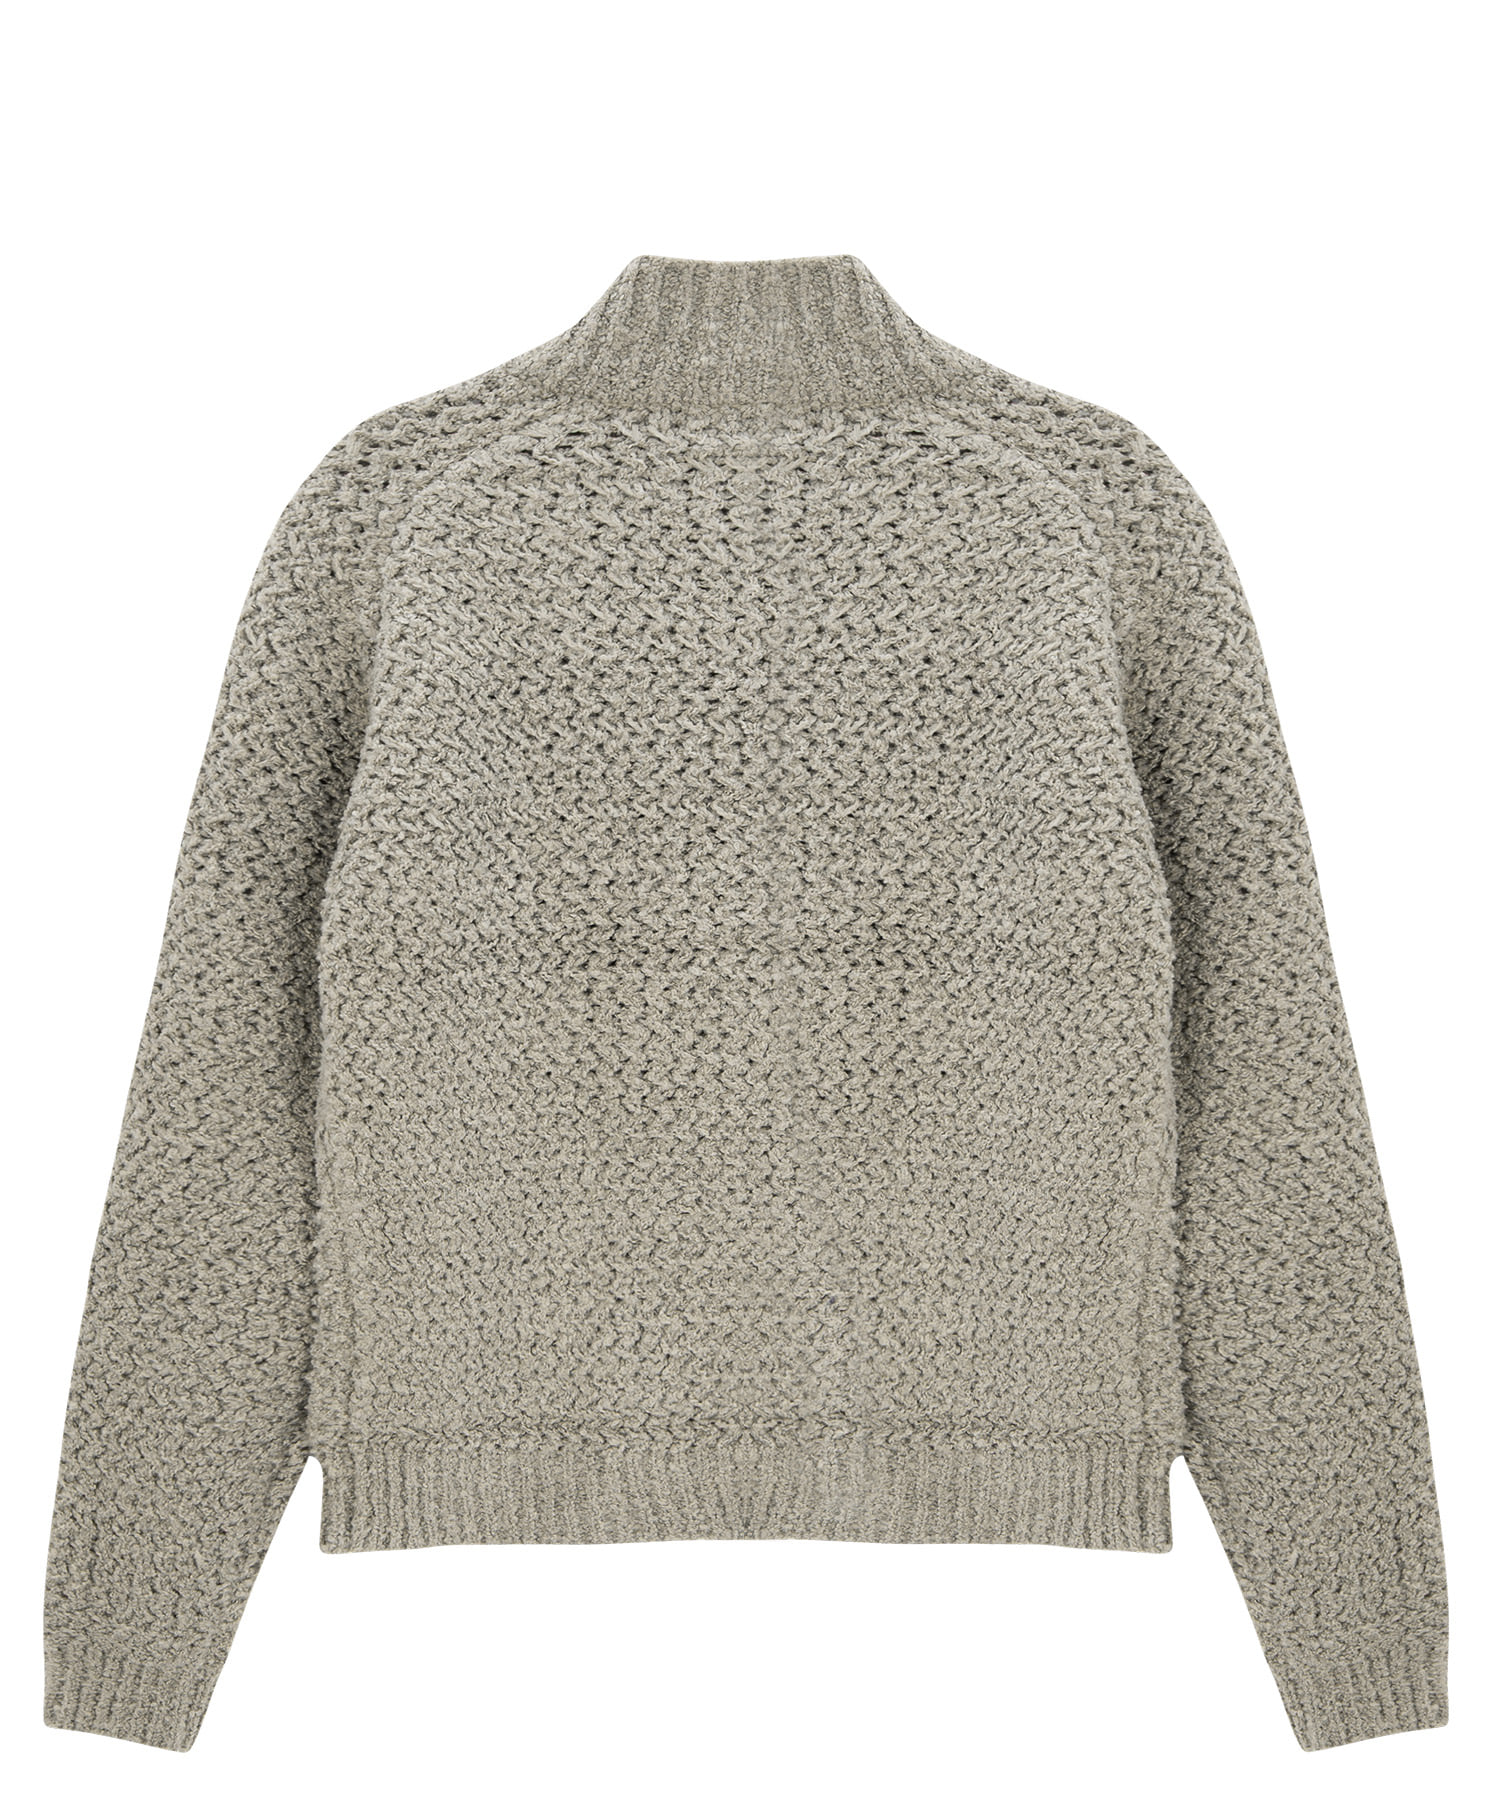 Wool Blend 2way Zipper Knit Cardigan - Beige